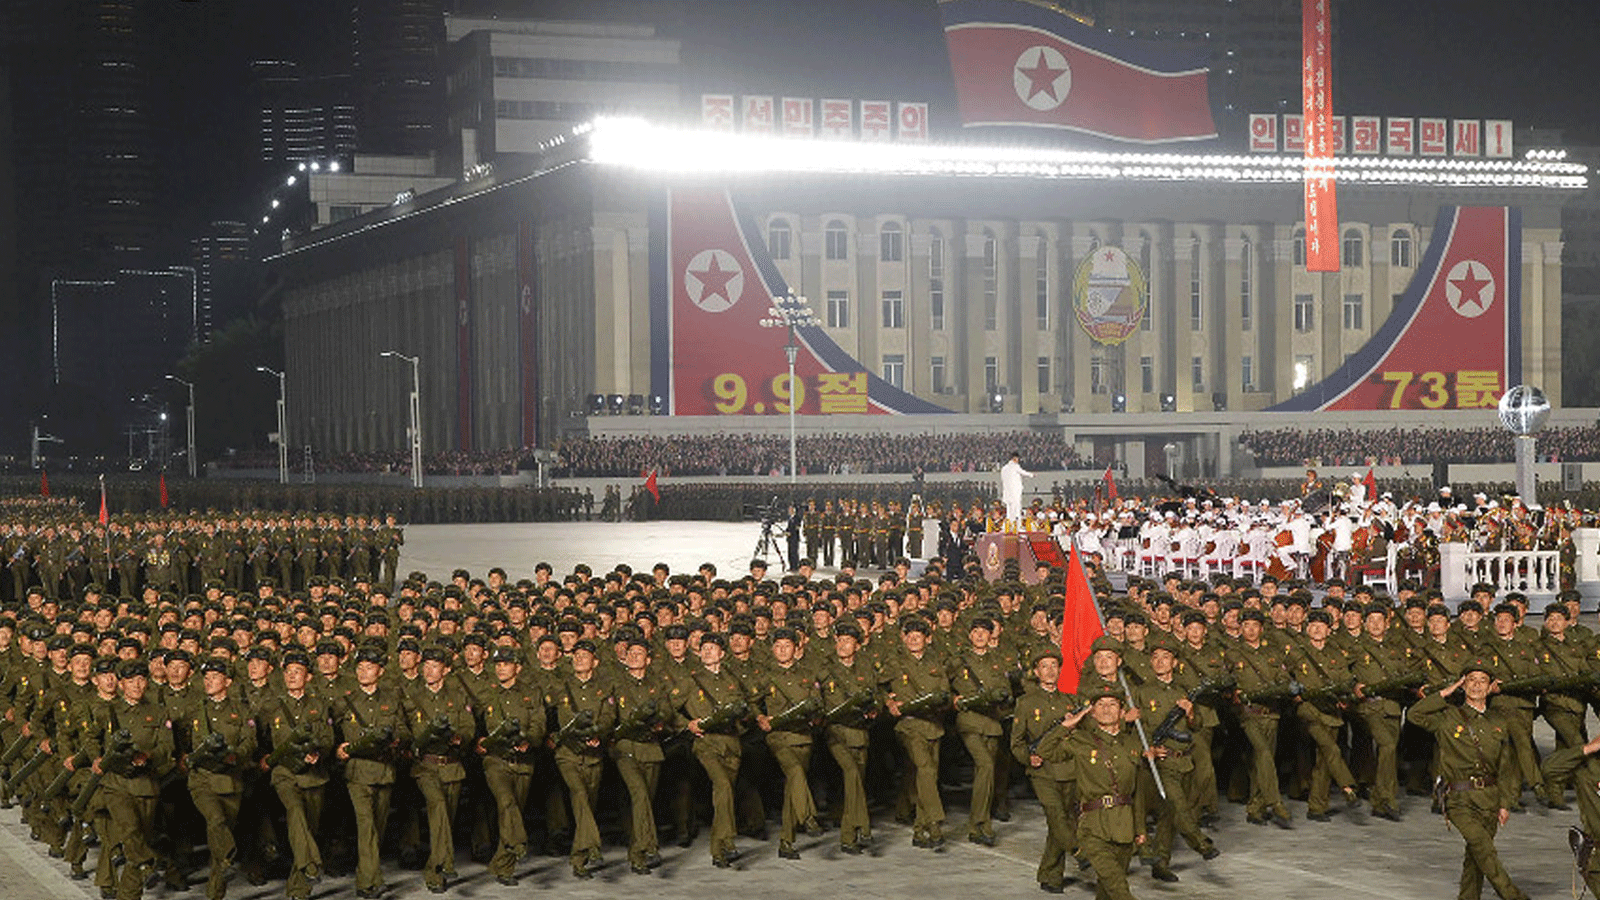 صورة من العرض العسكري الذي أُقيمً ليلاً في بيونغ يانغ لمناسبة الذكرى الثالثة والسبعين لتأسيس جمهورية كوريا الديموقراطية الشعبية 